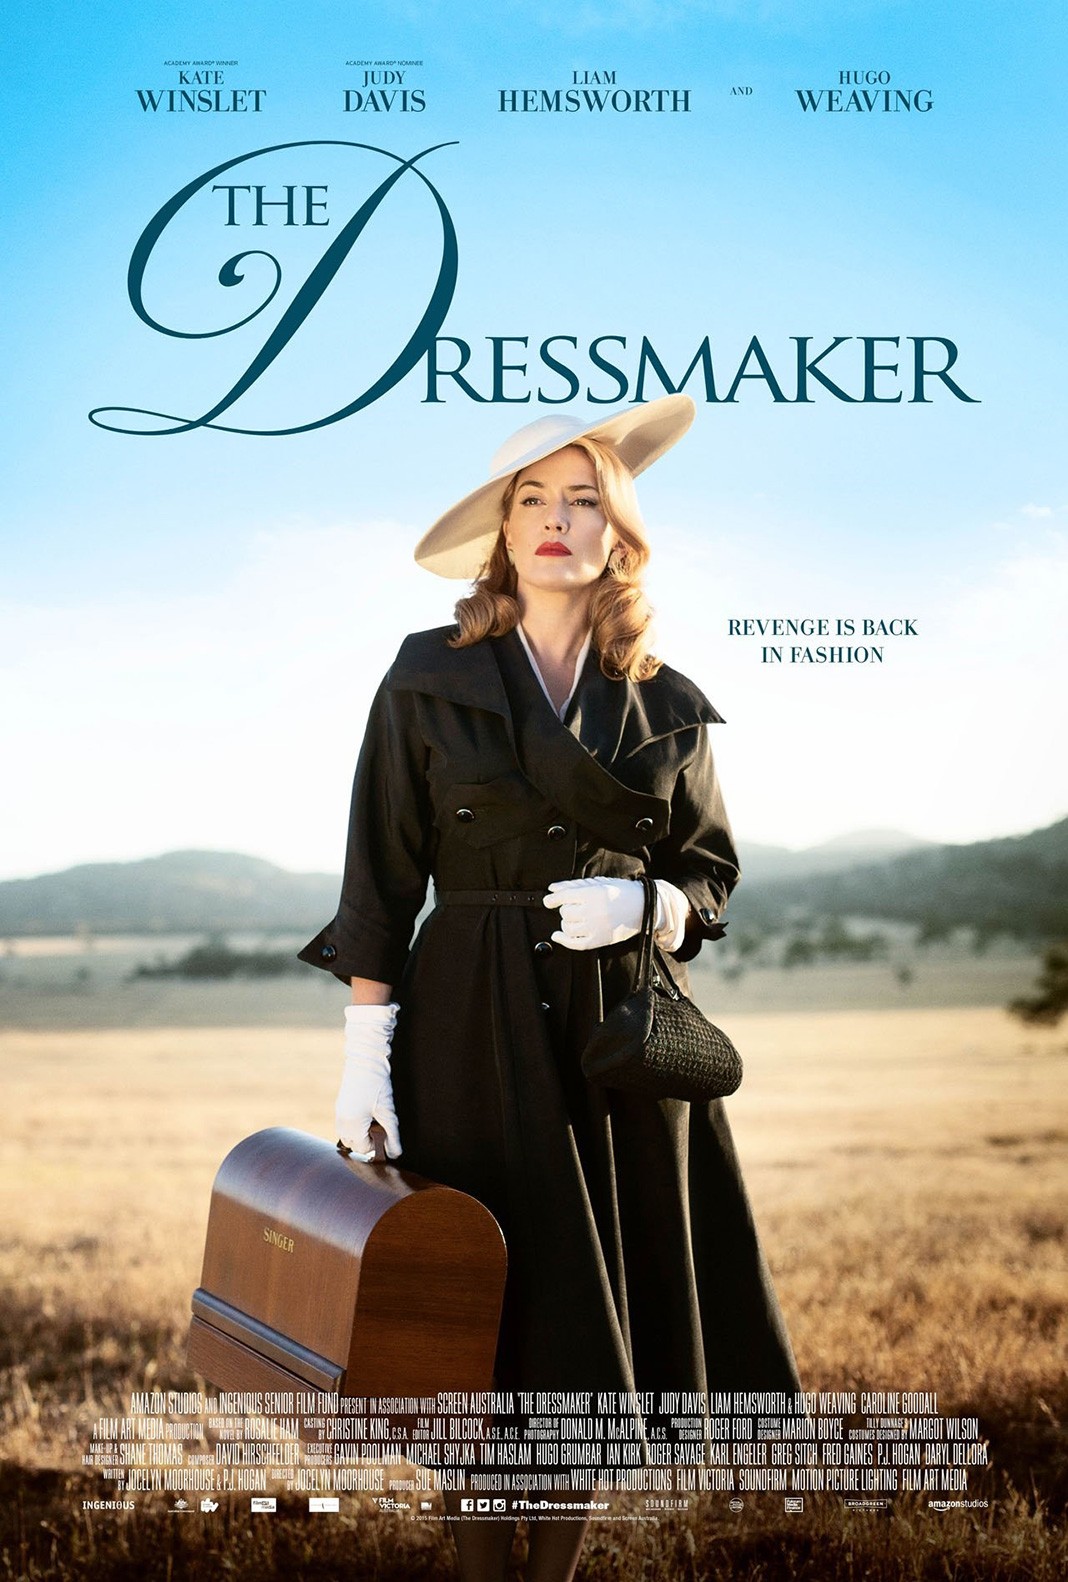 Афиша из фильма «Месть от кутюр» (The Dressmaker), 2015 г.